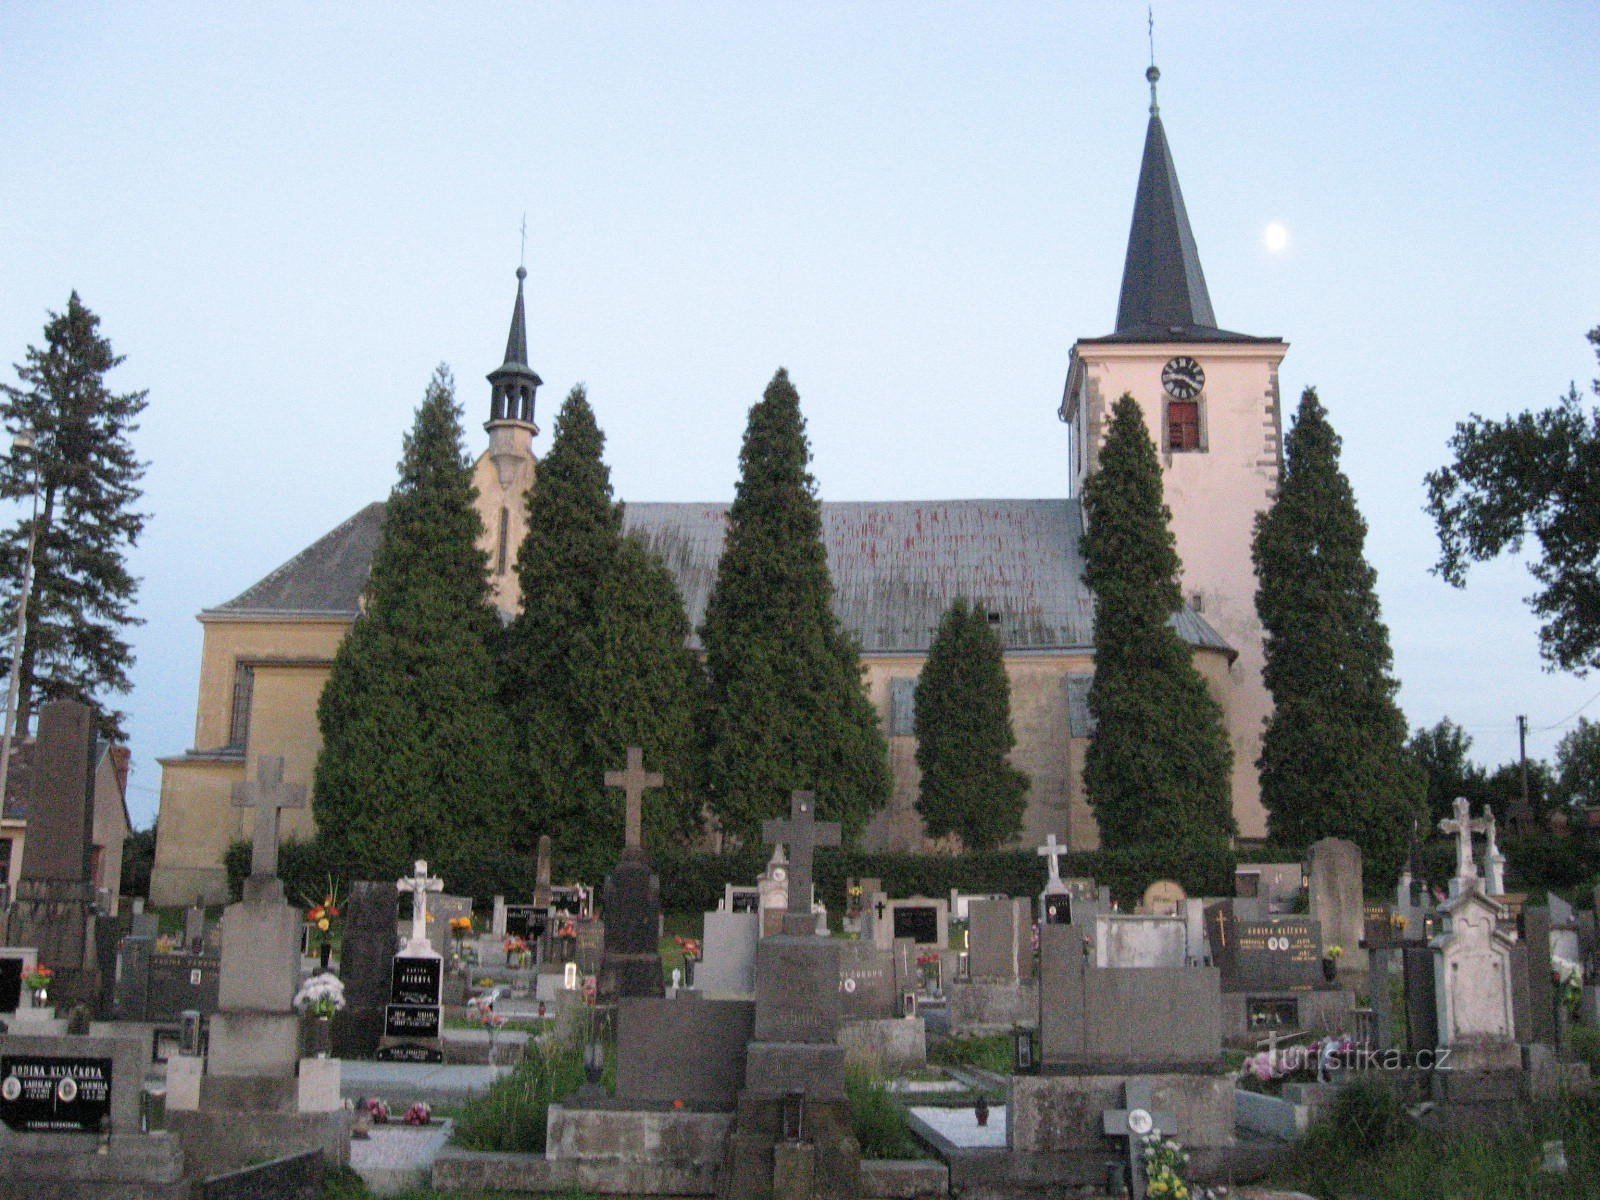 cemetery and church of St. Jiří in Kunčín